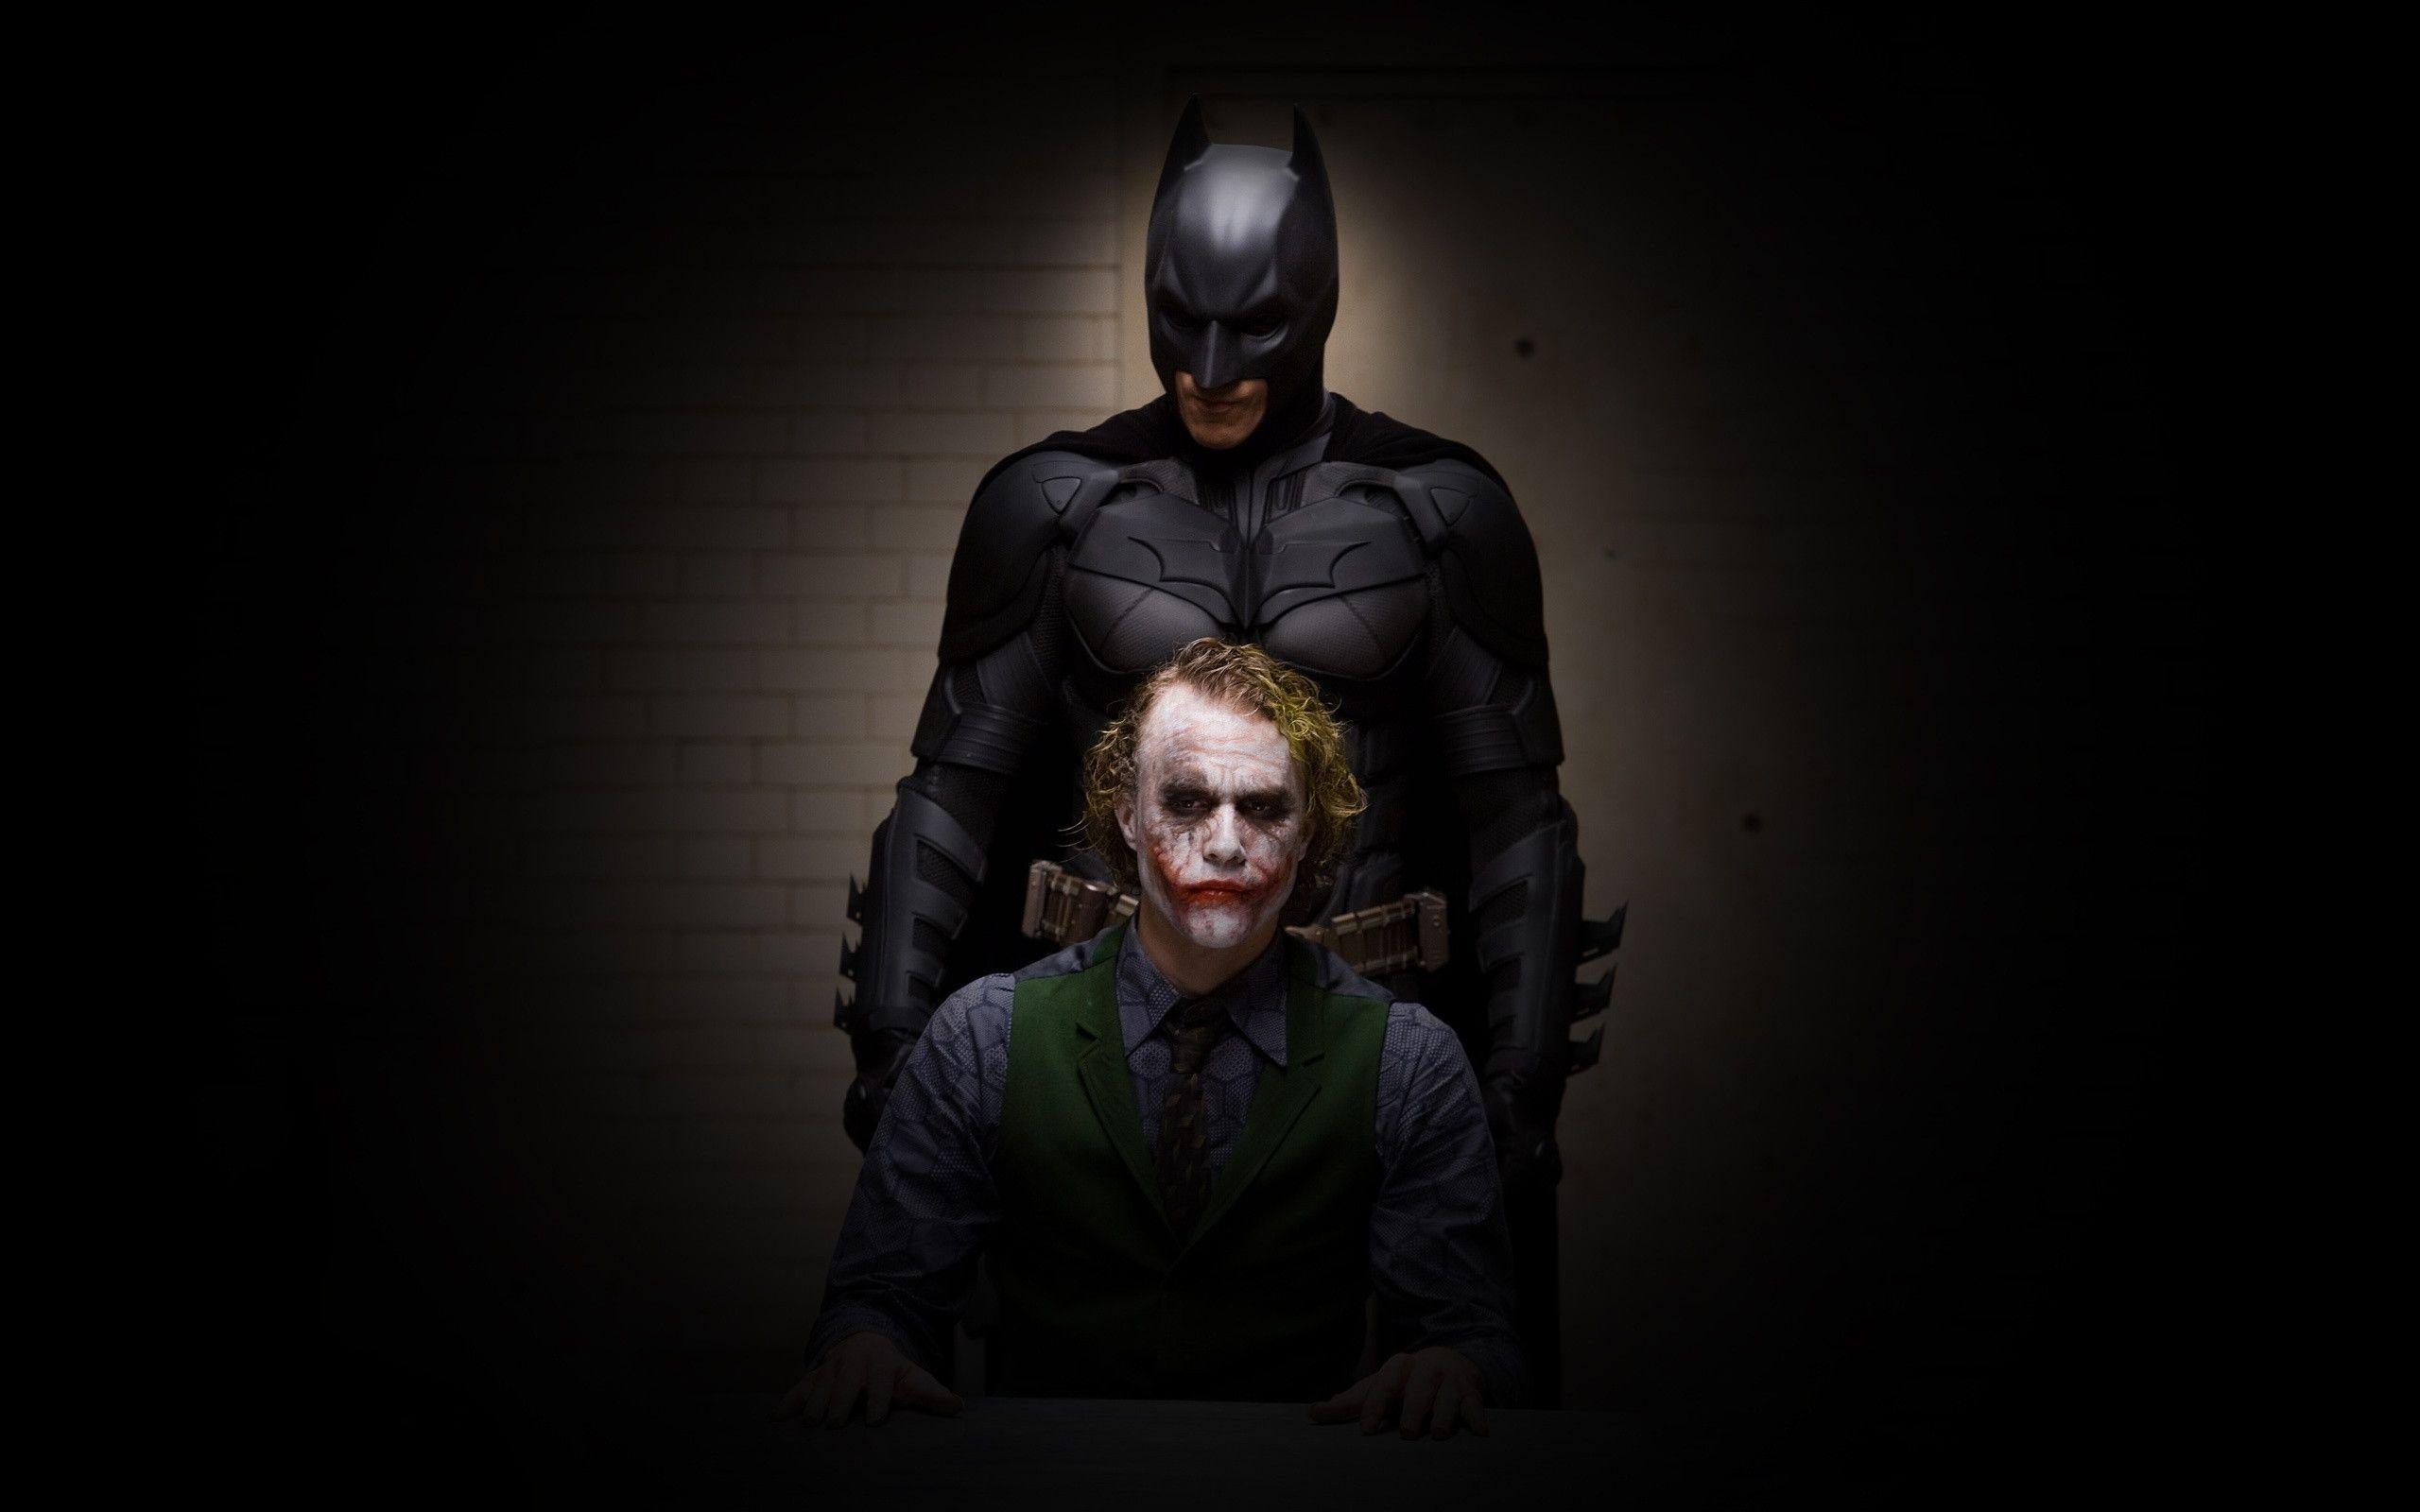 Wallpaper Batman Joker Dark The Dark Knight image clip